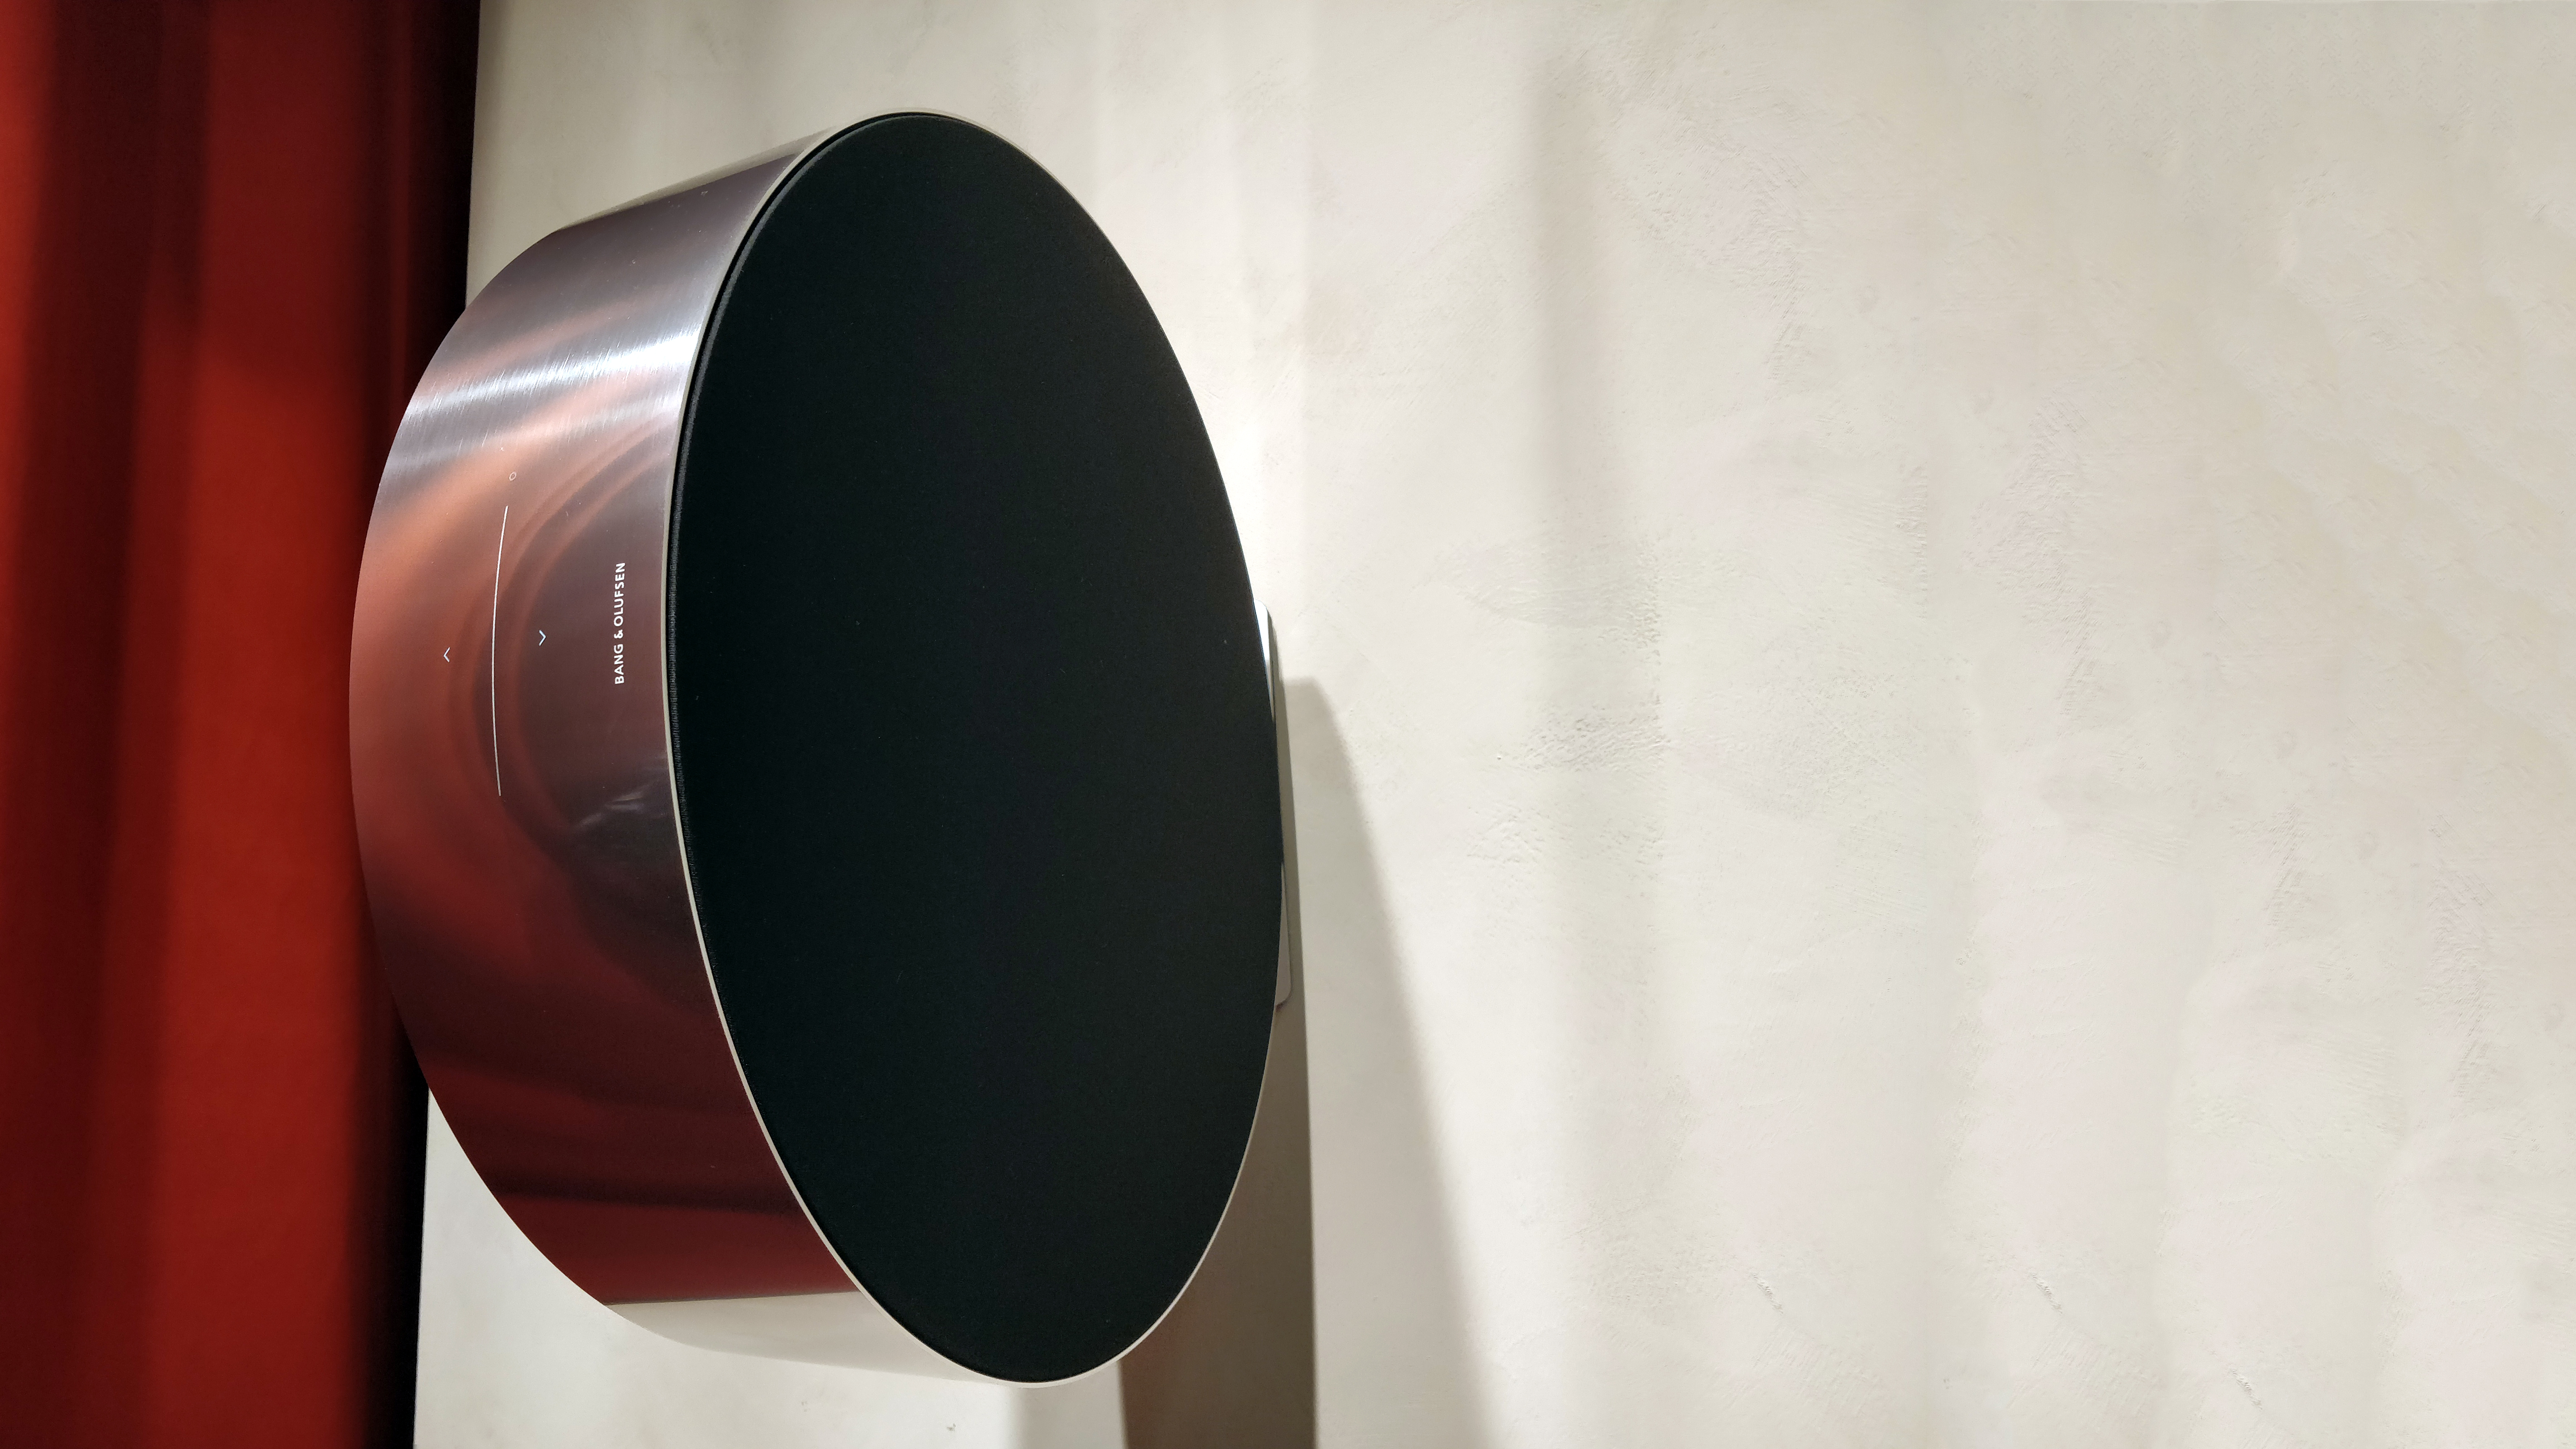 Leesbaarheid Pelgrim mini Bang & Olufsen Edge wireless speaker hands-on review | What Hi-Fi?